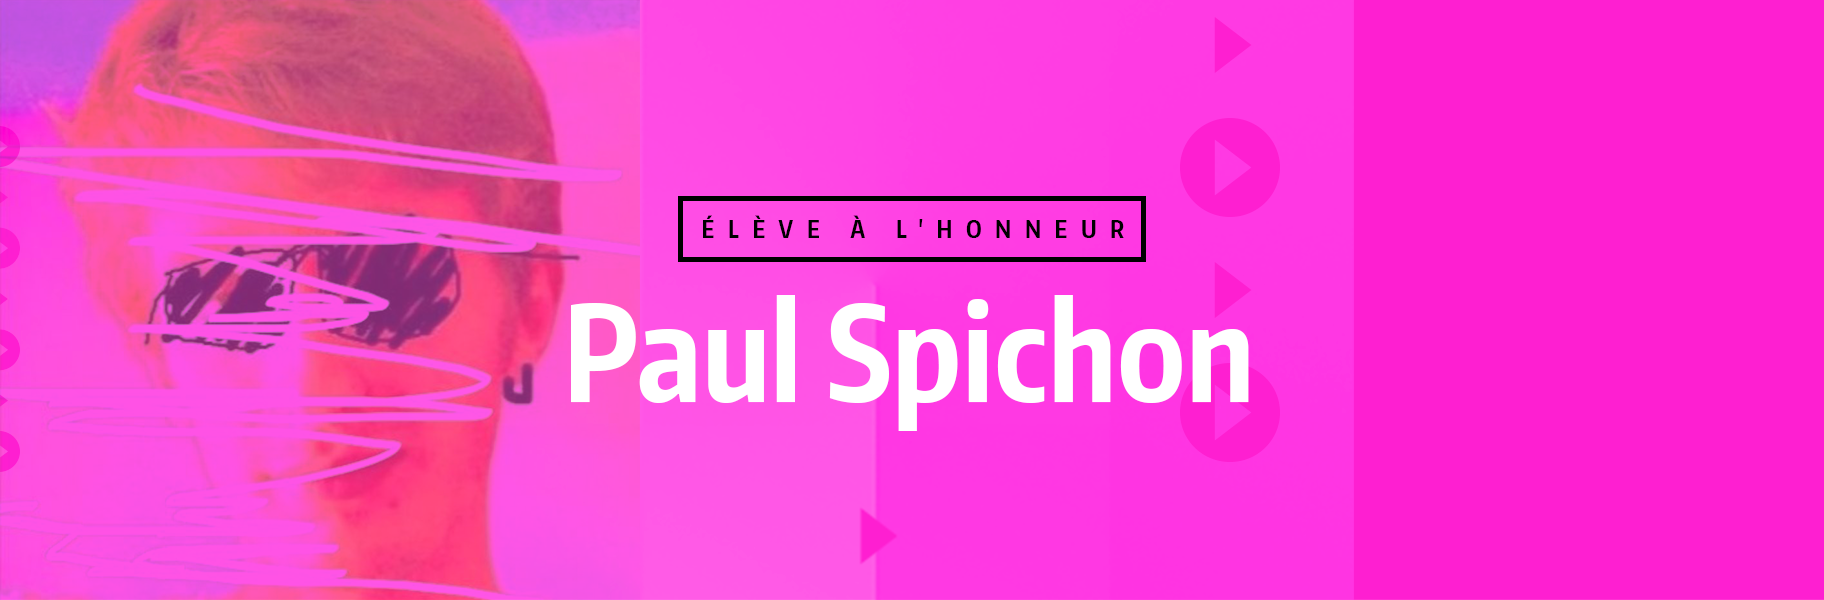 Élève à l'honneur - PaulSpichon